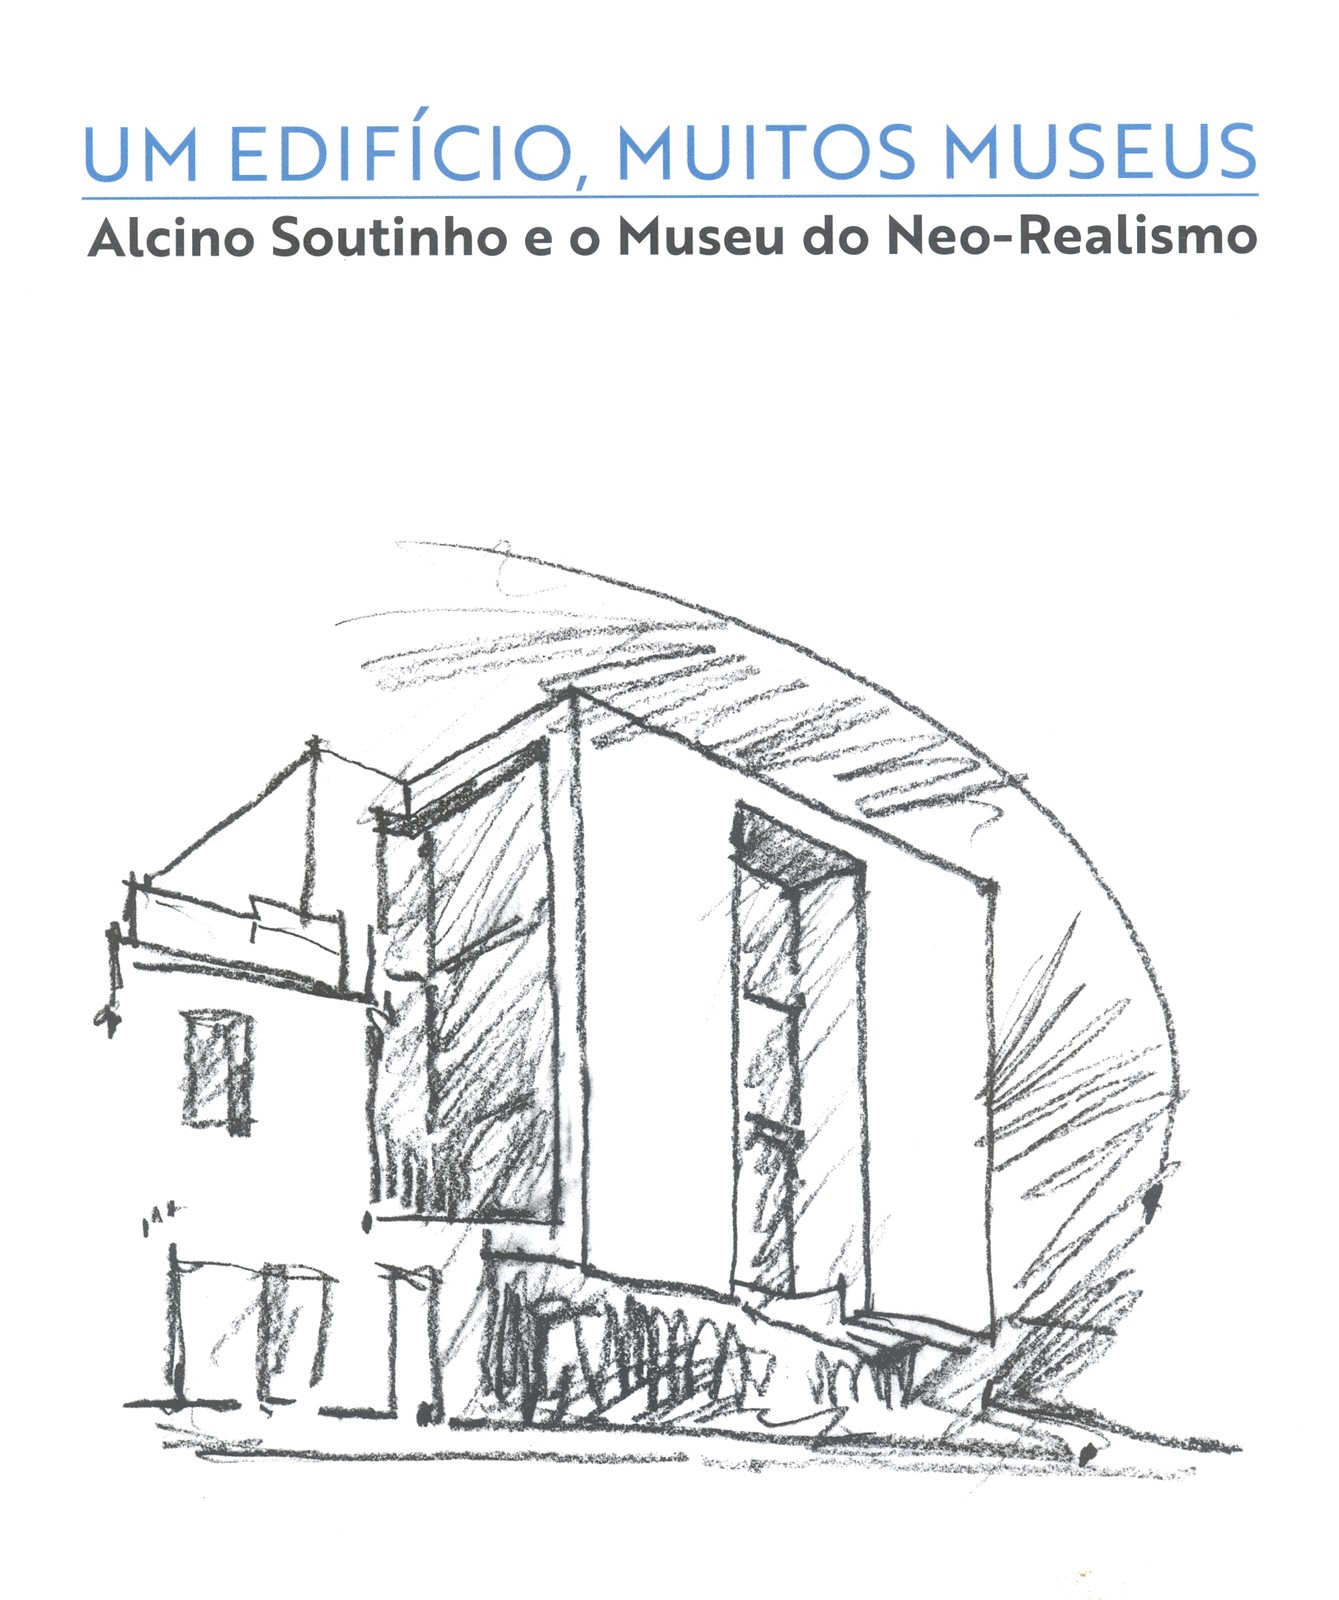 Catálogo da Exposição Um Edifício, Muitos Museus – Alcino Soutinho e o Museu do Neo-Realismo